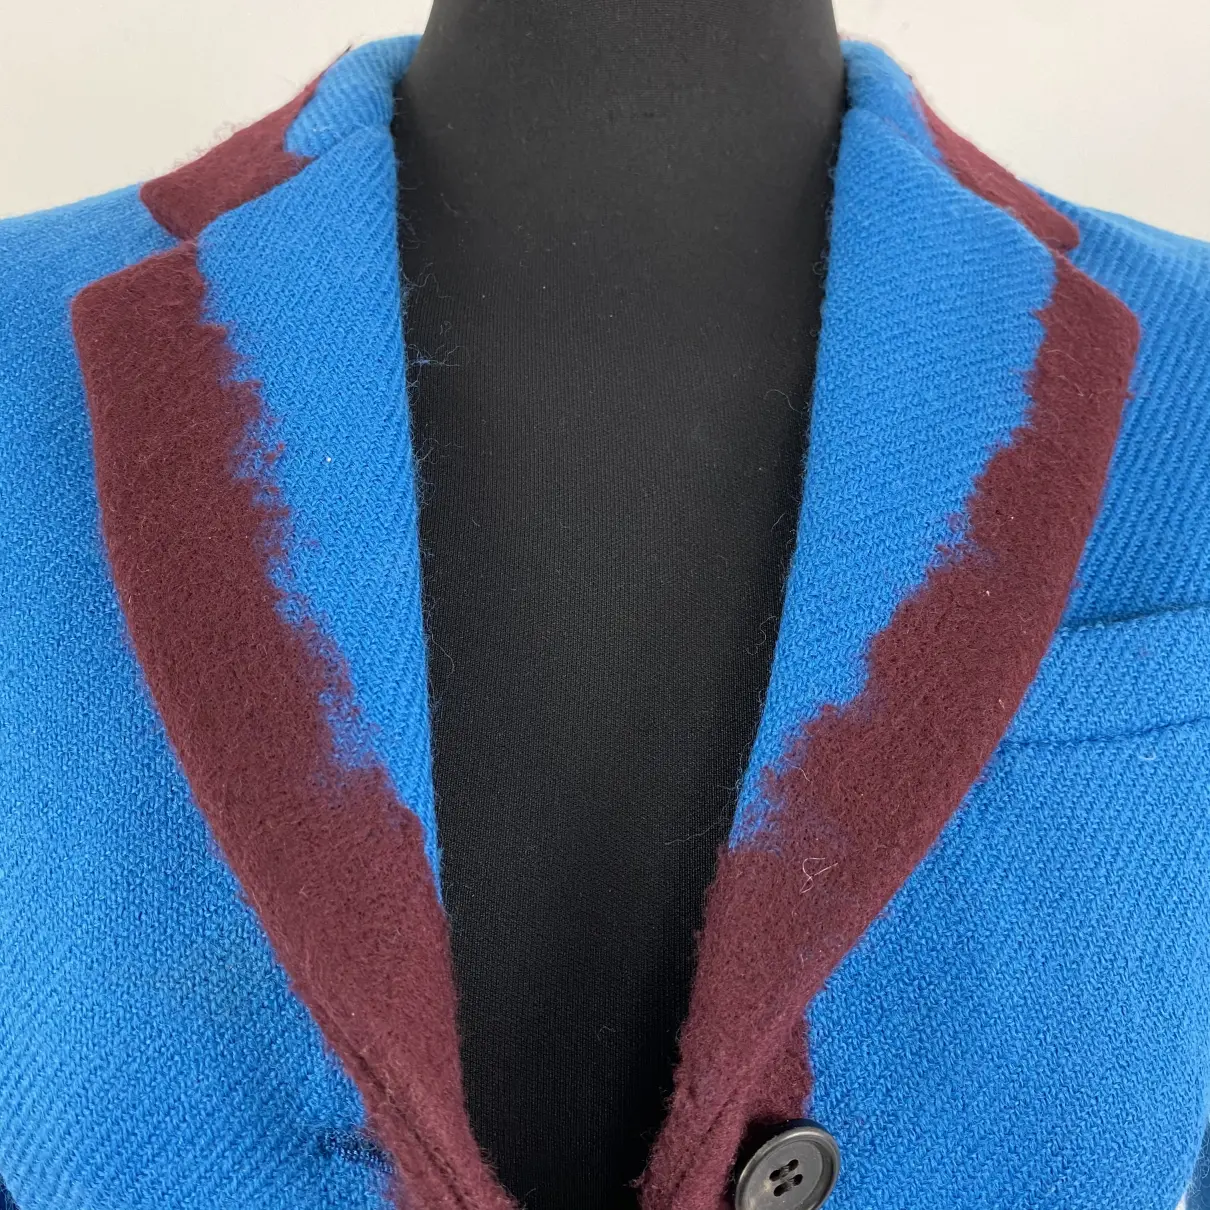 Wool suit jacket Prada